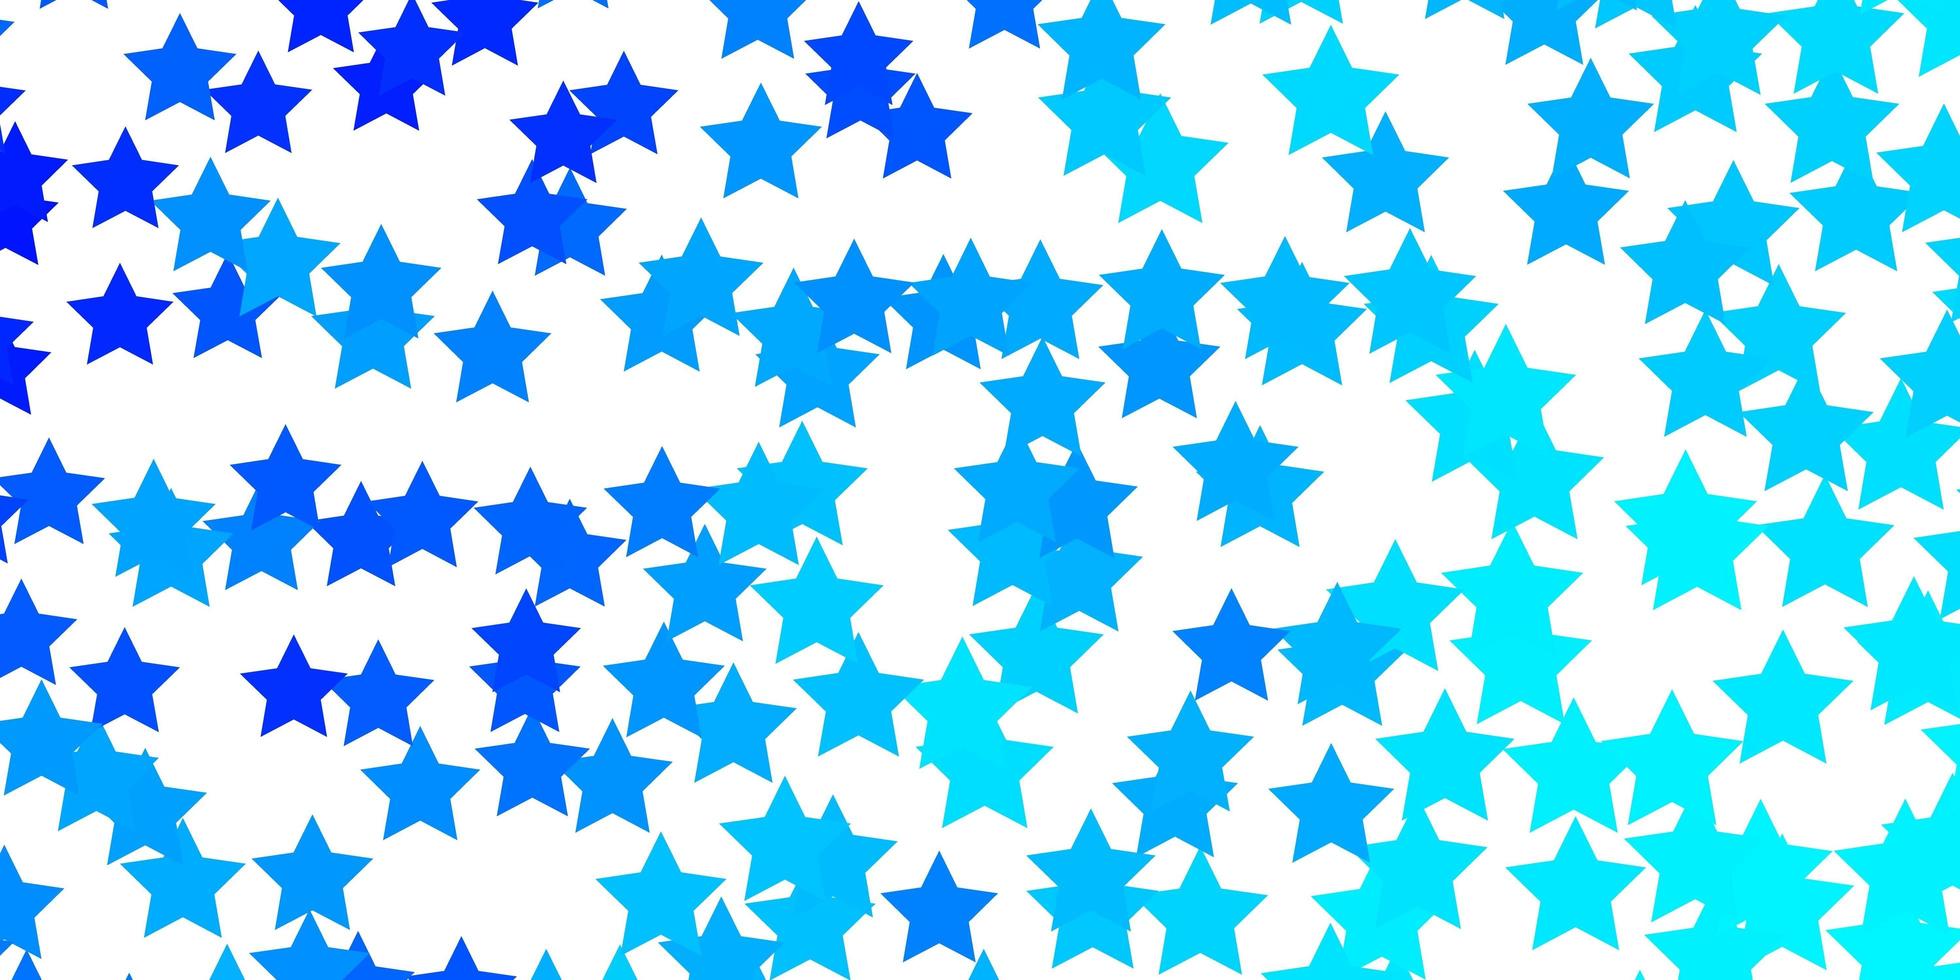 hellblaue Vektortextur mit schönen Sternen bunte Illustration im abstrakten Stil mit Gradientensternenmuster für Webseiten-Landingpages vektor